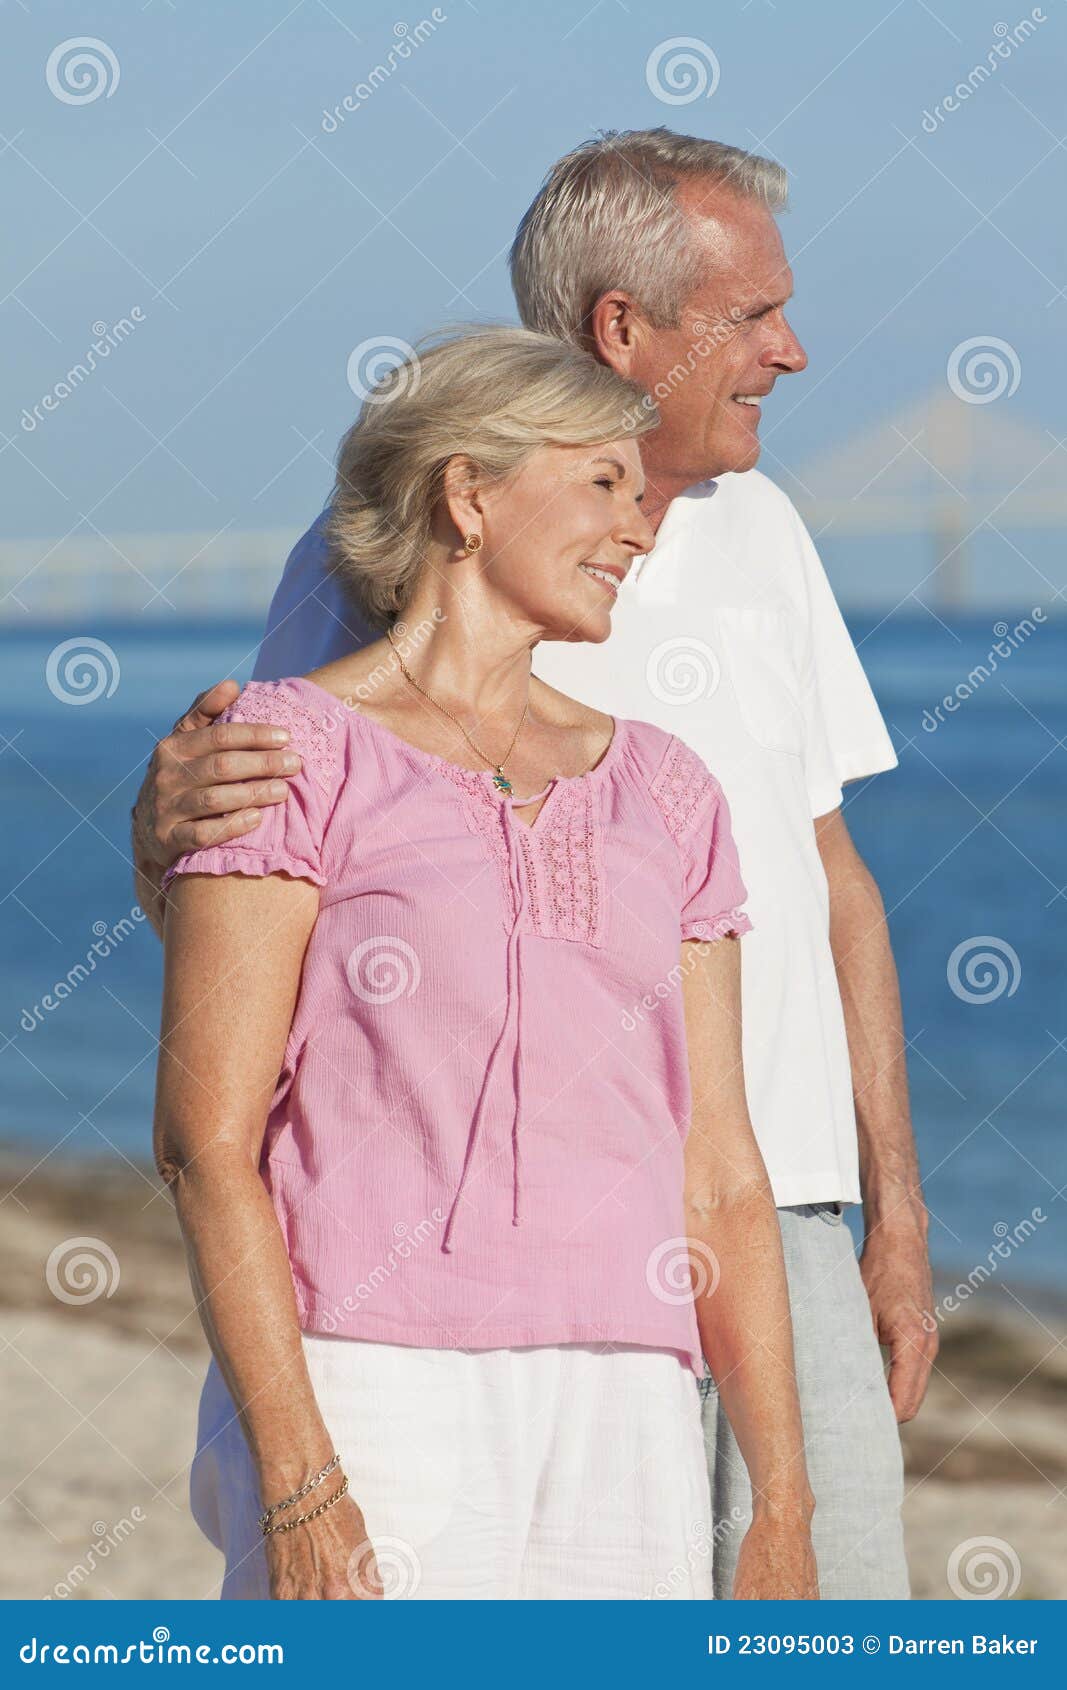 happy romantic senior couple embracing on beach